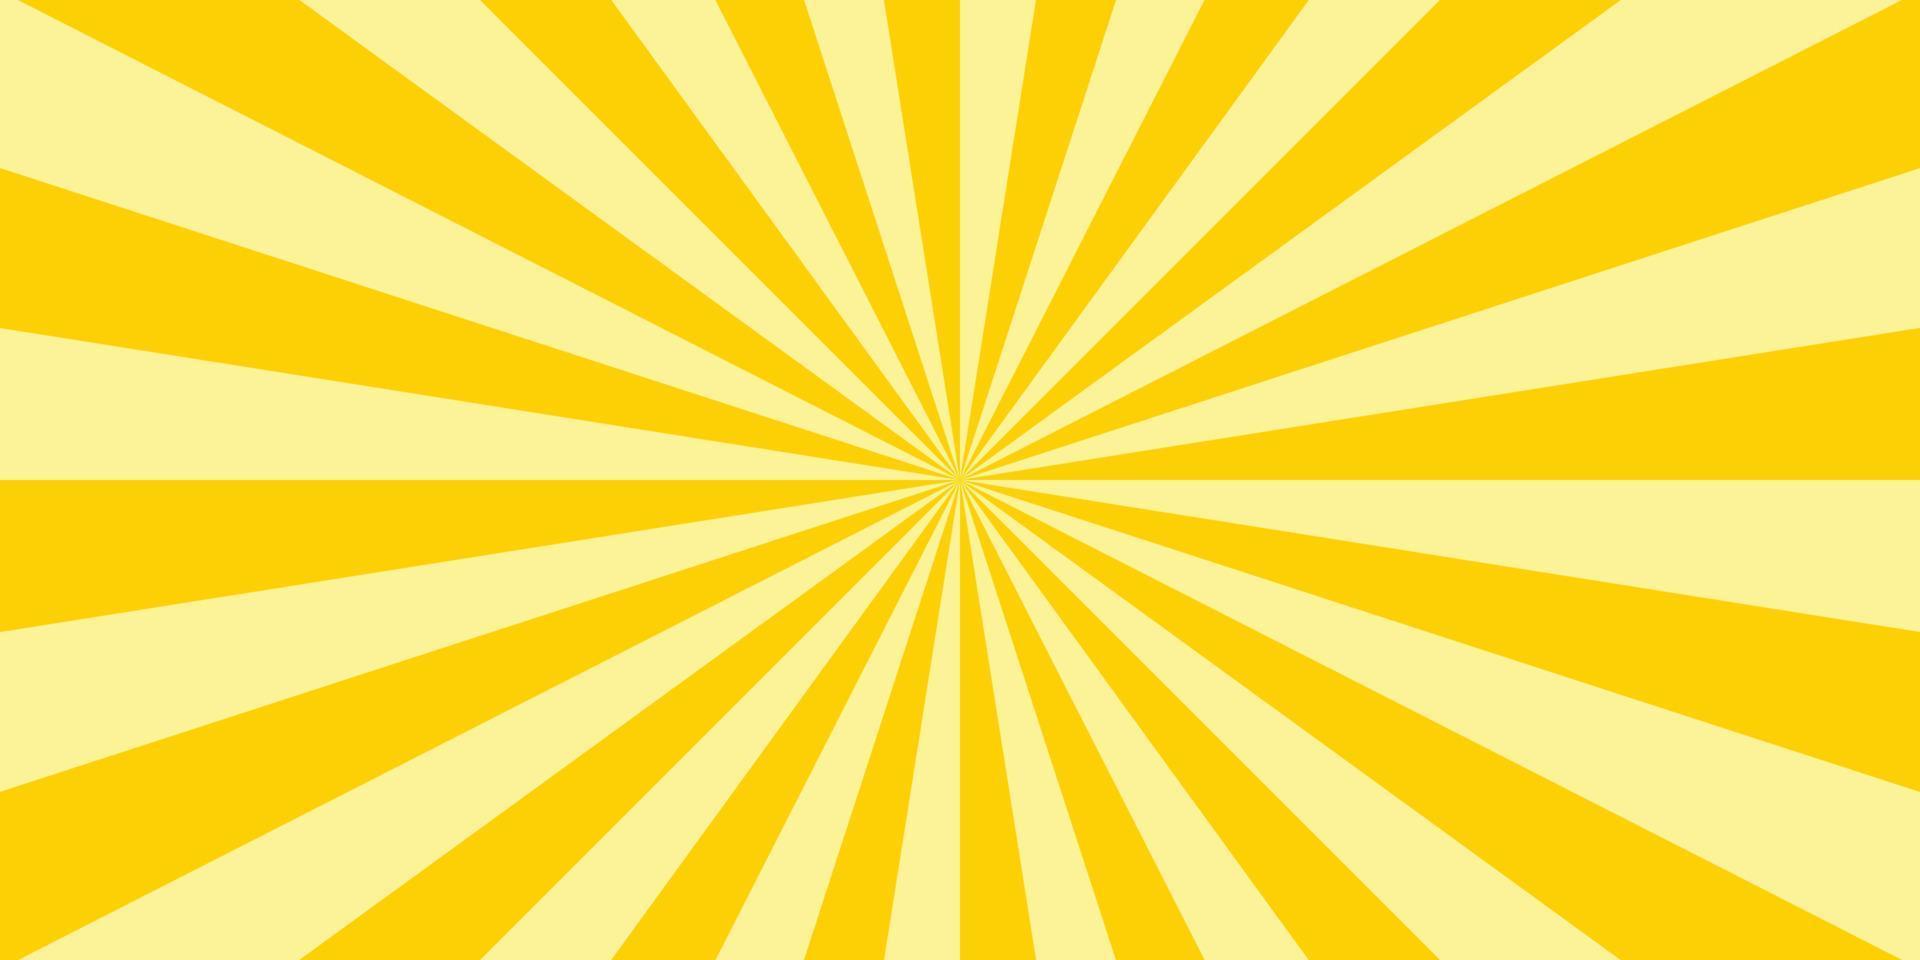 abstrakter explosionshintergrund in gelber farbverlaufsfarbe. Blendeffekt im asiatischen Stil. Sonnenschein-Glanzmuster. Vektordarstellung eines radialen Strahls. schmaler Strahl. für Kulissen, Poster, Banner, Cover. vektor